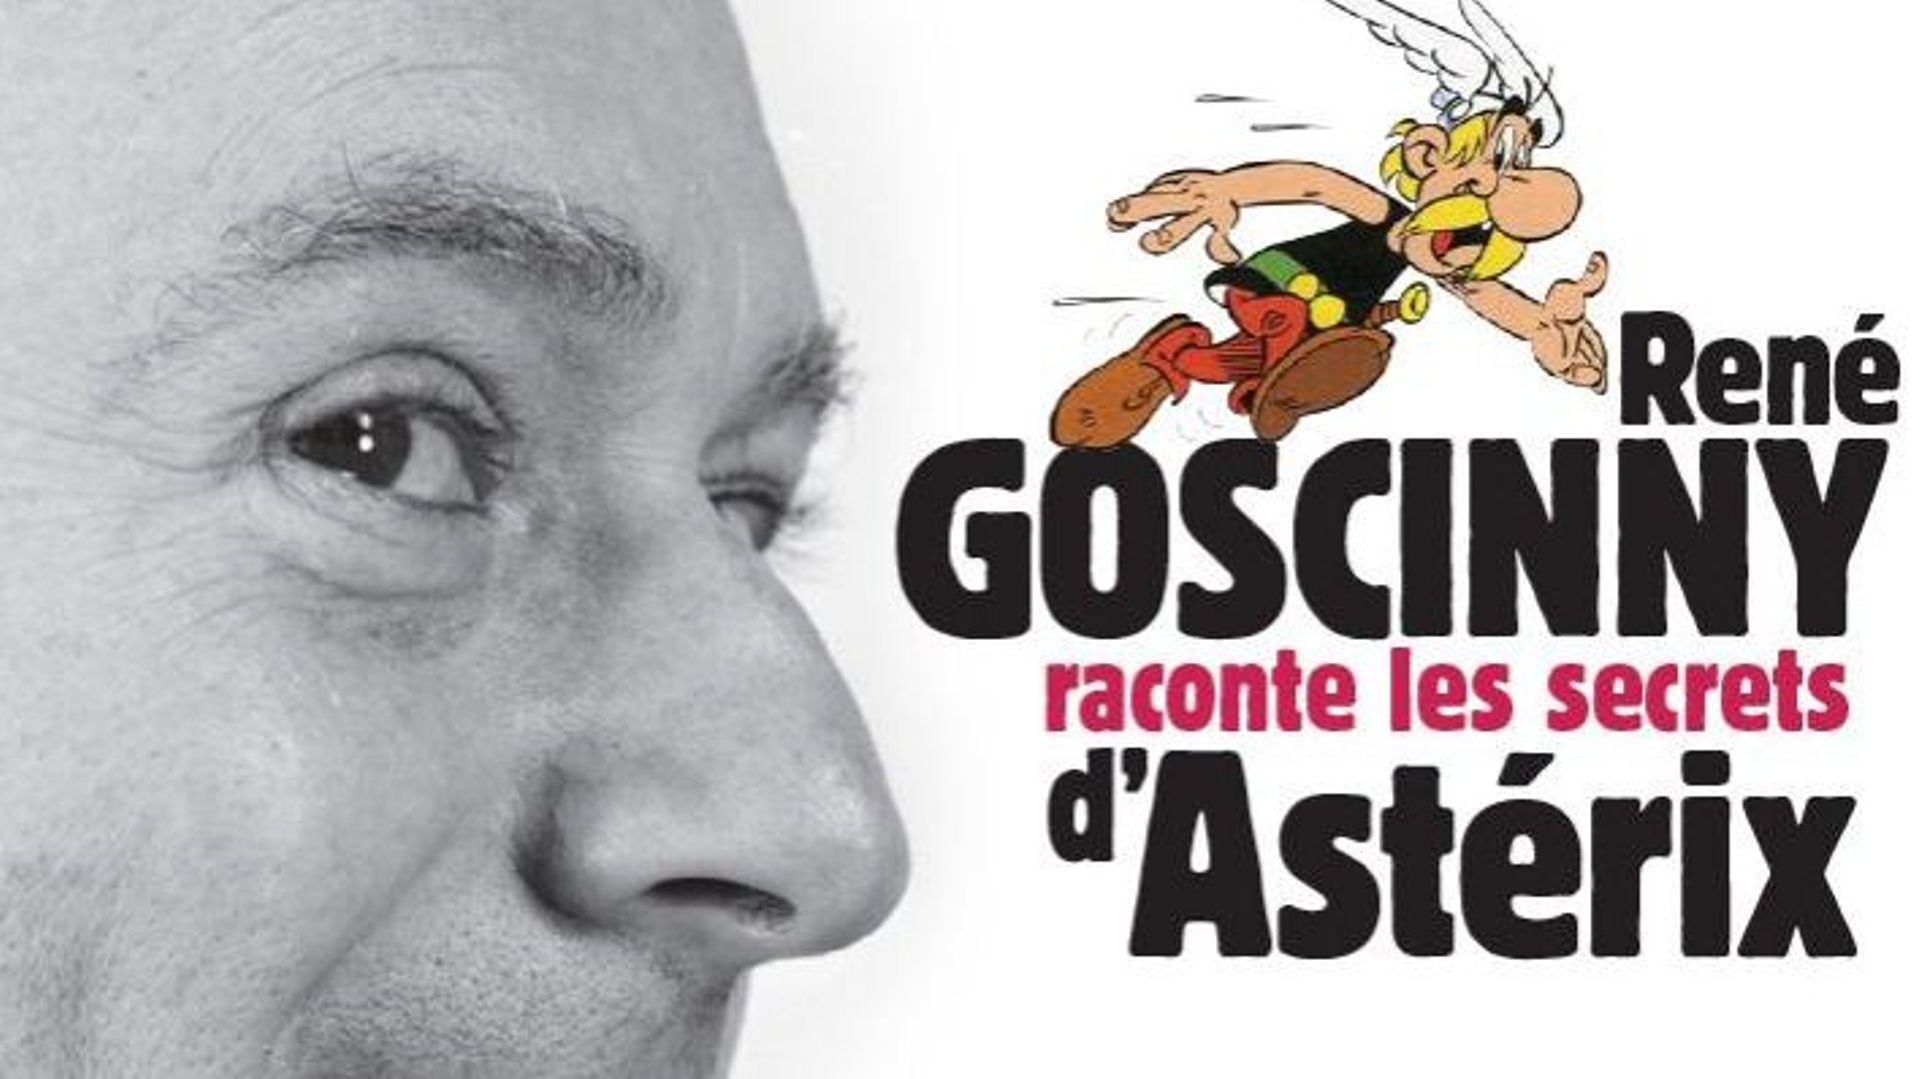 Le livre "René Goscinny raconte les secrets d'Astérix" sort le 12 septembre